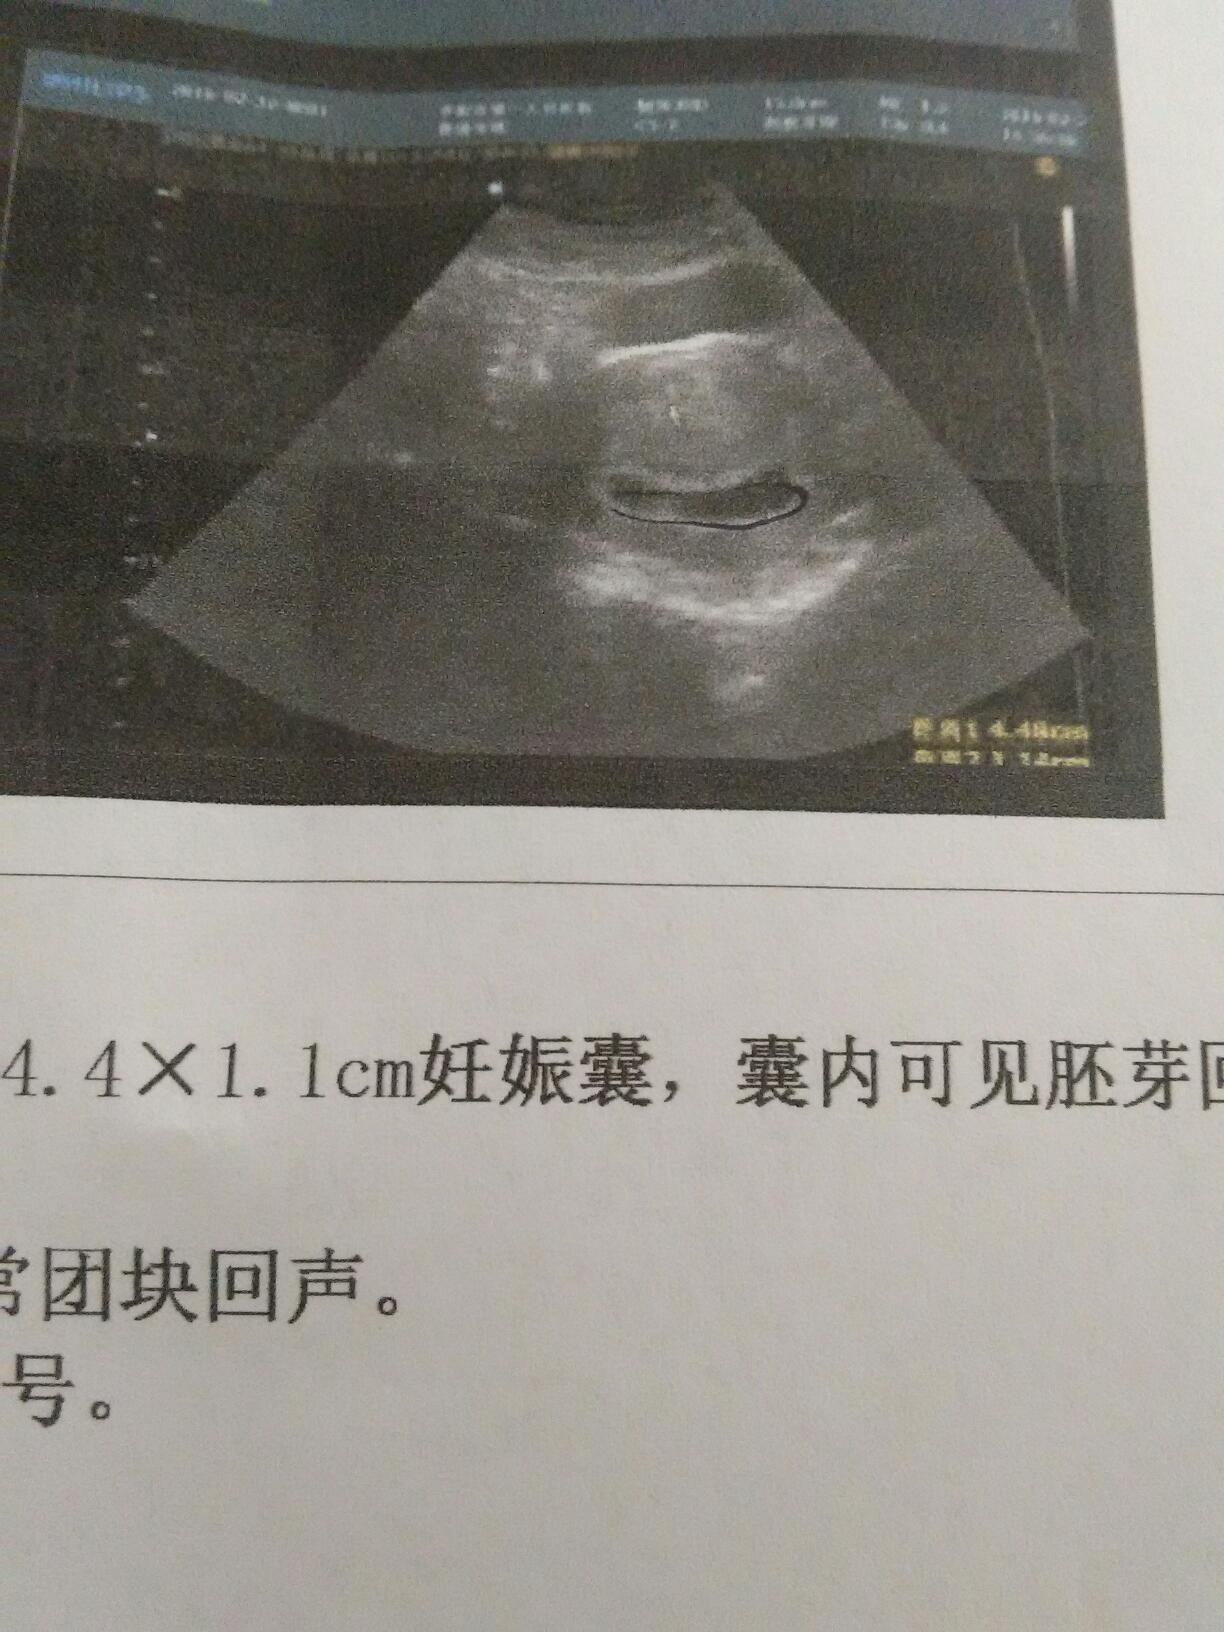 二胎性别有暗示：一胎宝宝长得像爸爸，二胎生男孩？